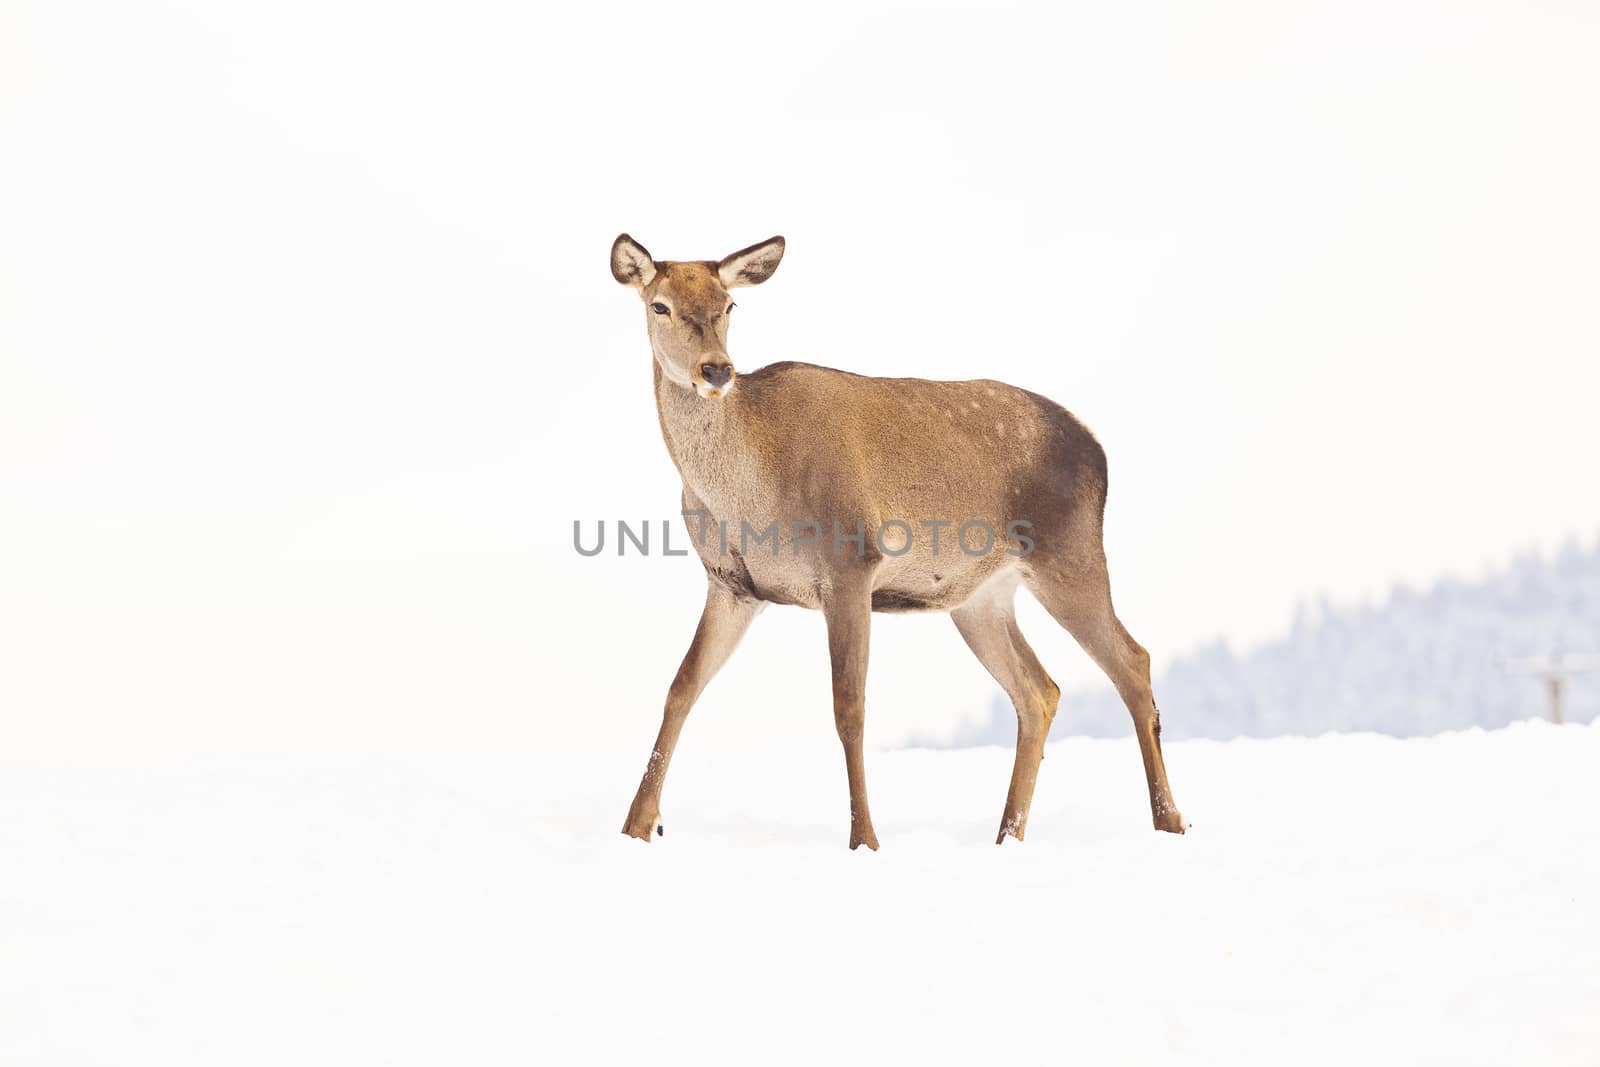 roe deer in winter snow 